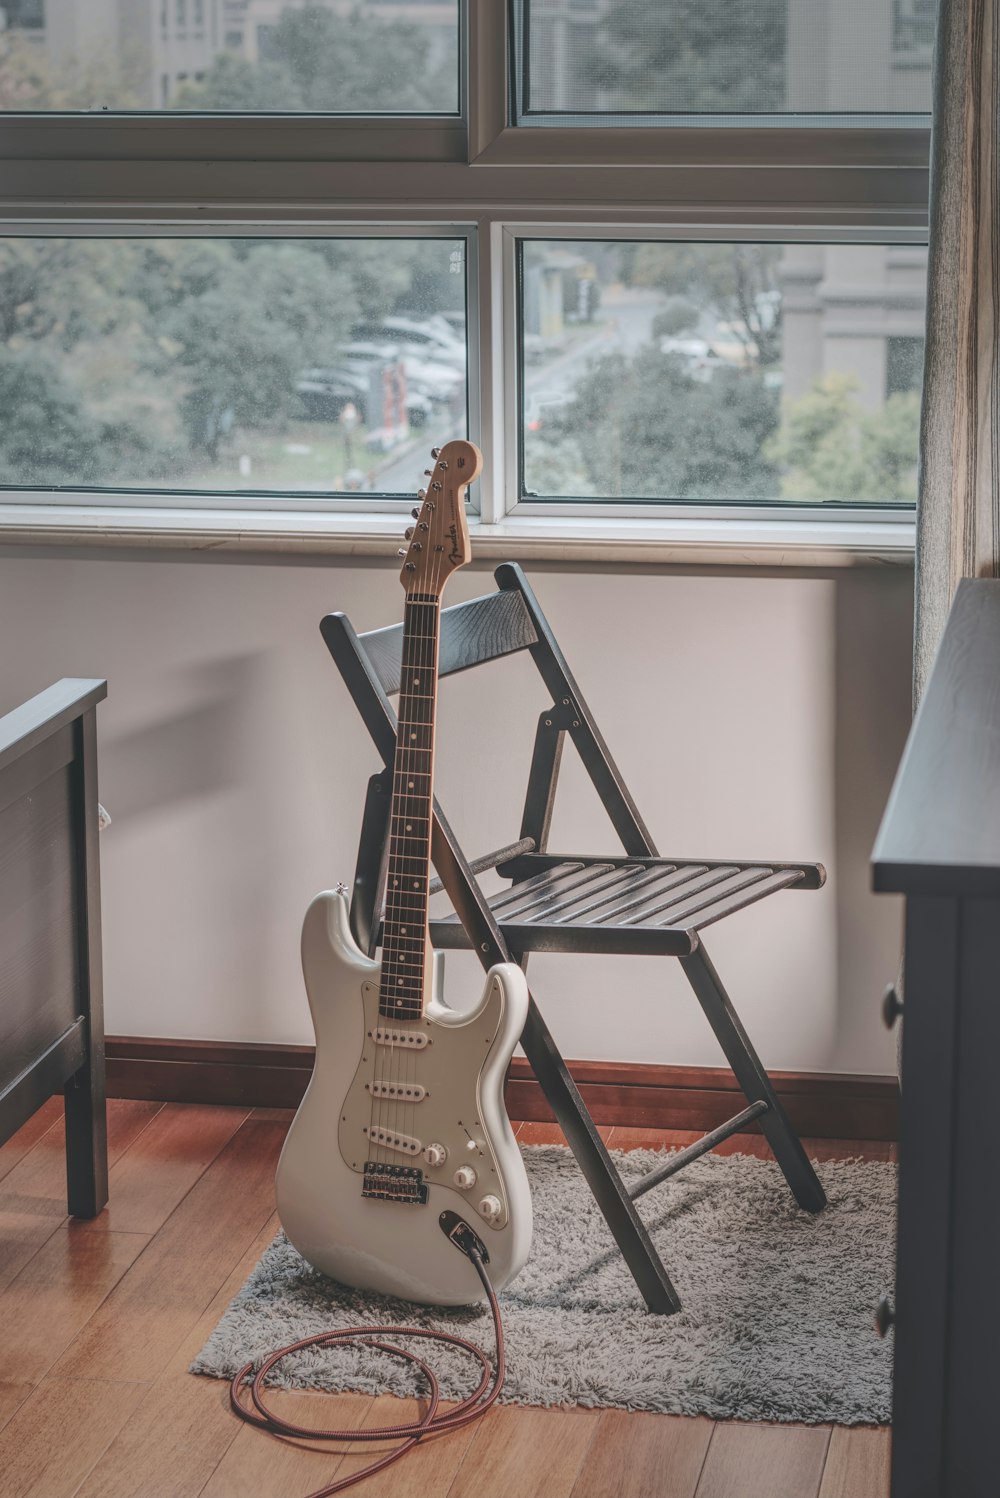 guitarra elétrica stratocaster branca e marrom no suporte de metal preto